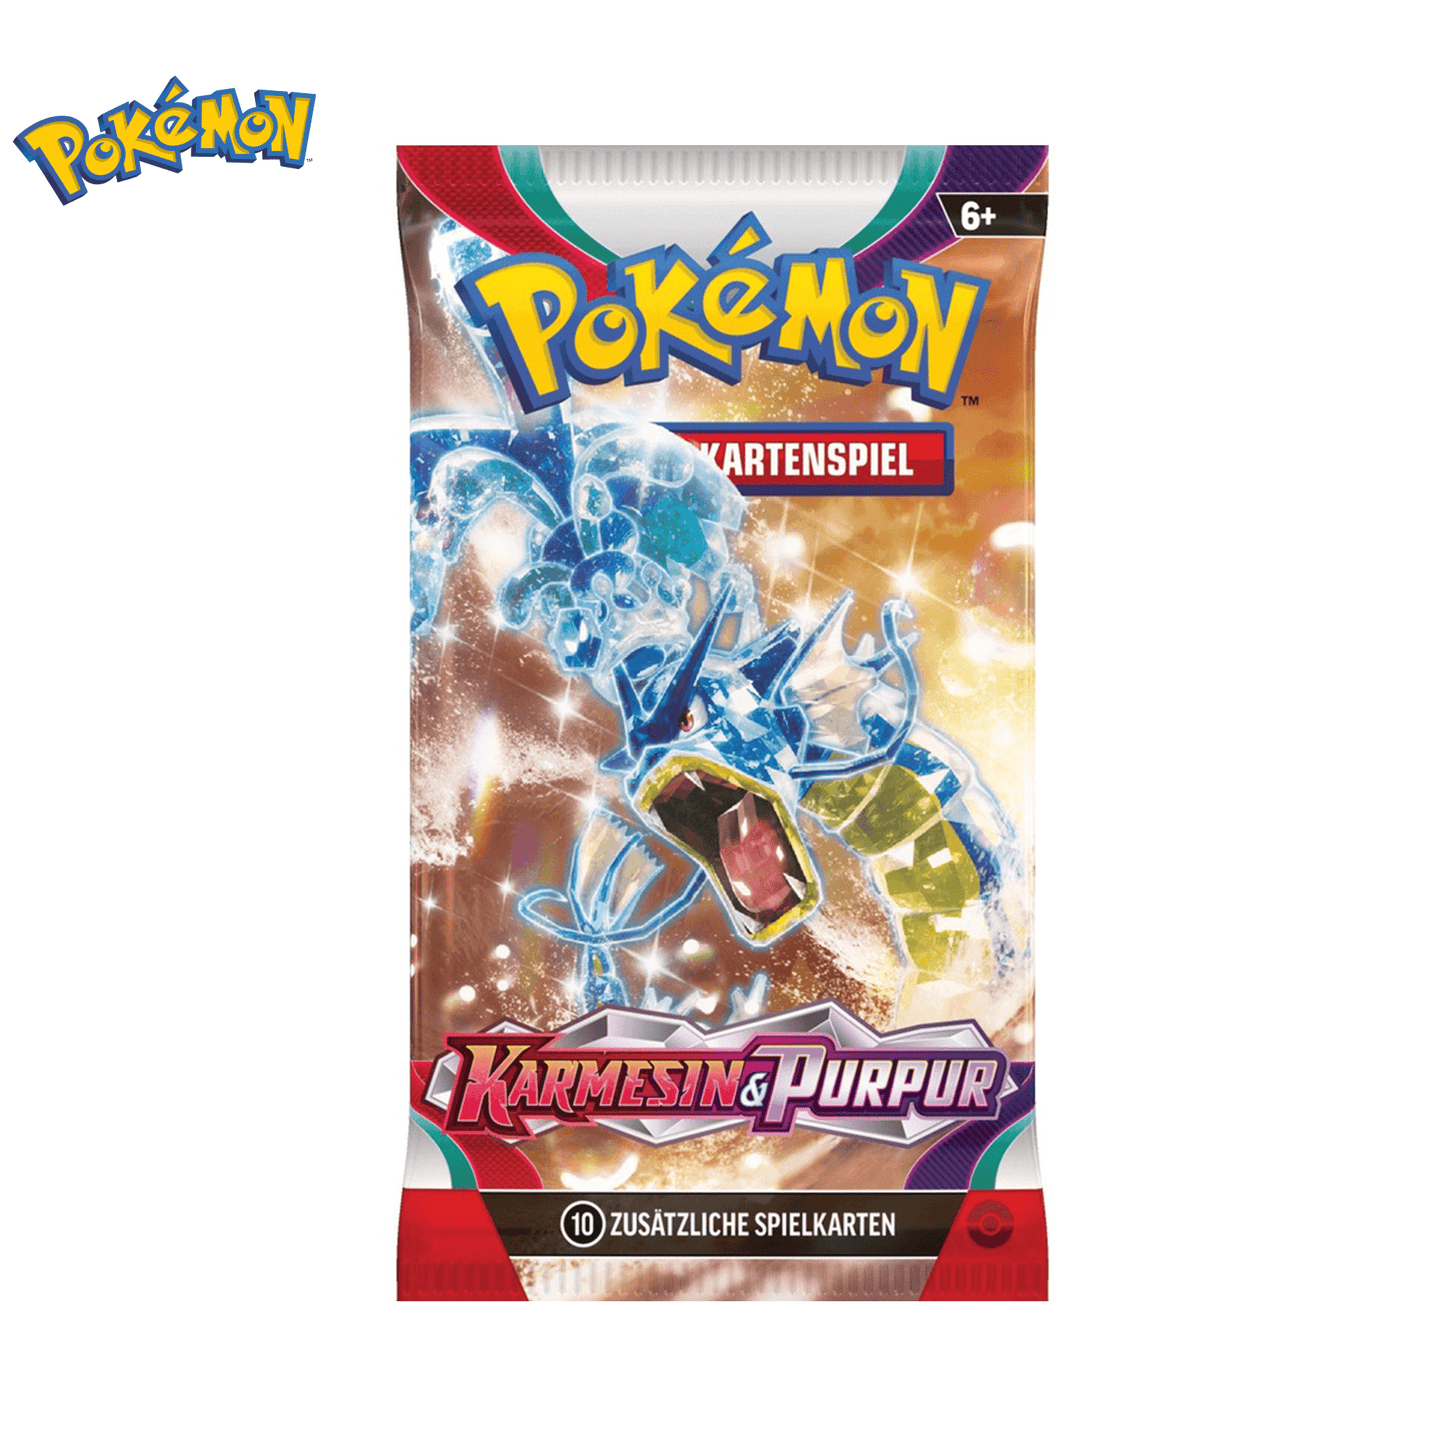 Pokémon Karmesin & Purpur - Booster Pack - Der Kiosk - Offiziell